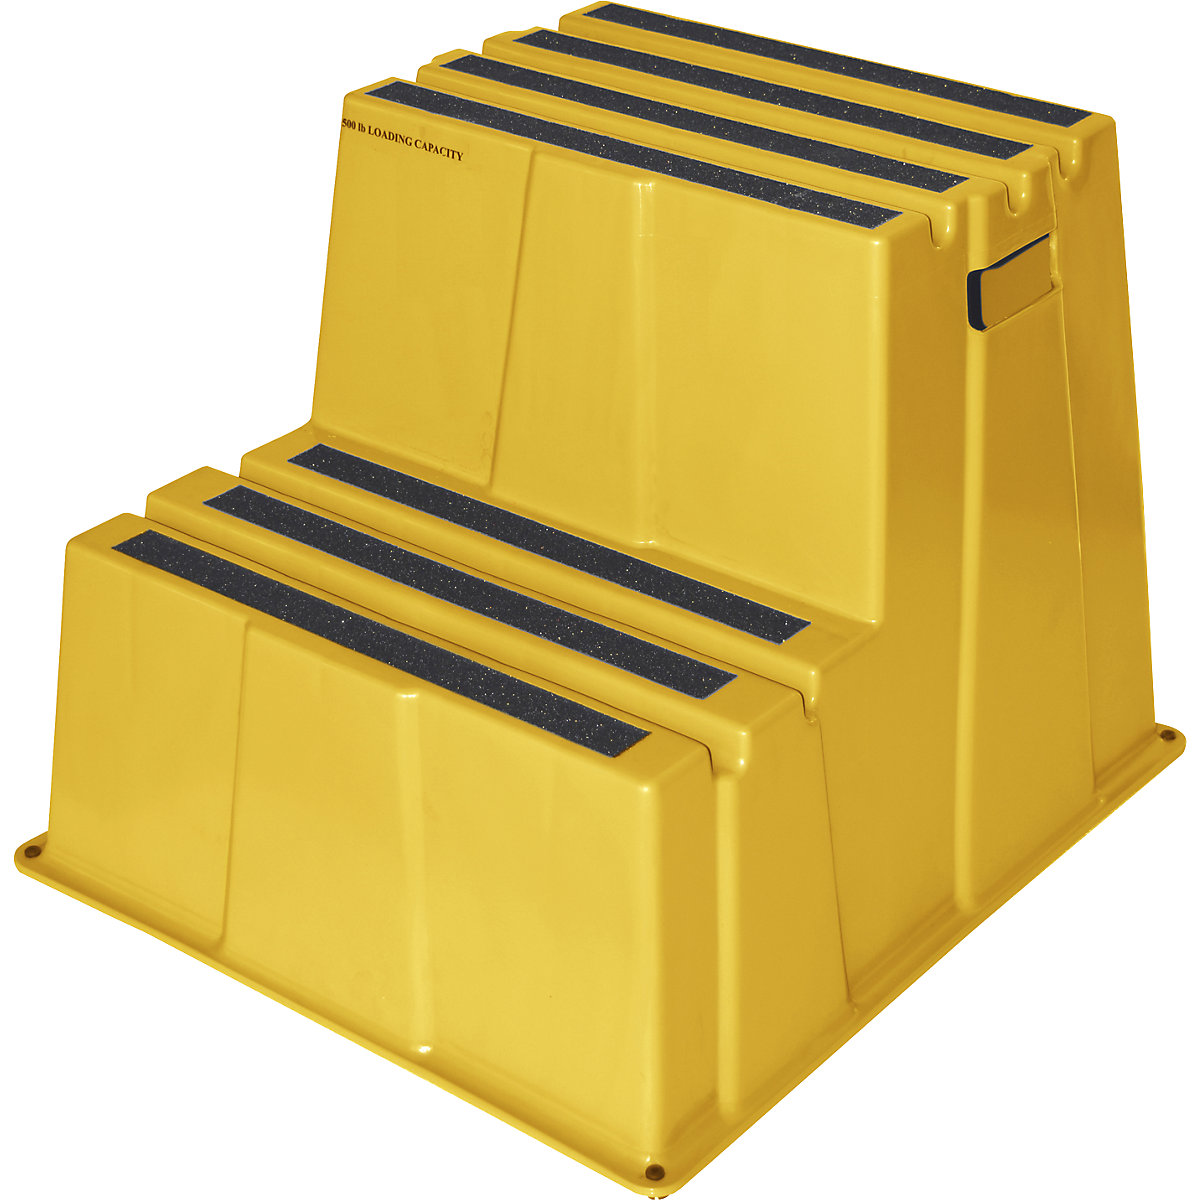 Scaletta in plastica con gradini con rivestimento antiscivolo – Twinco, portata 150 kg, 2 gradini, giallo, a partire da 2 pz.-9